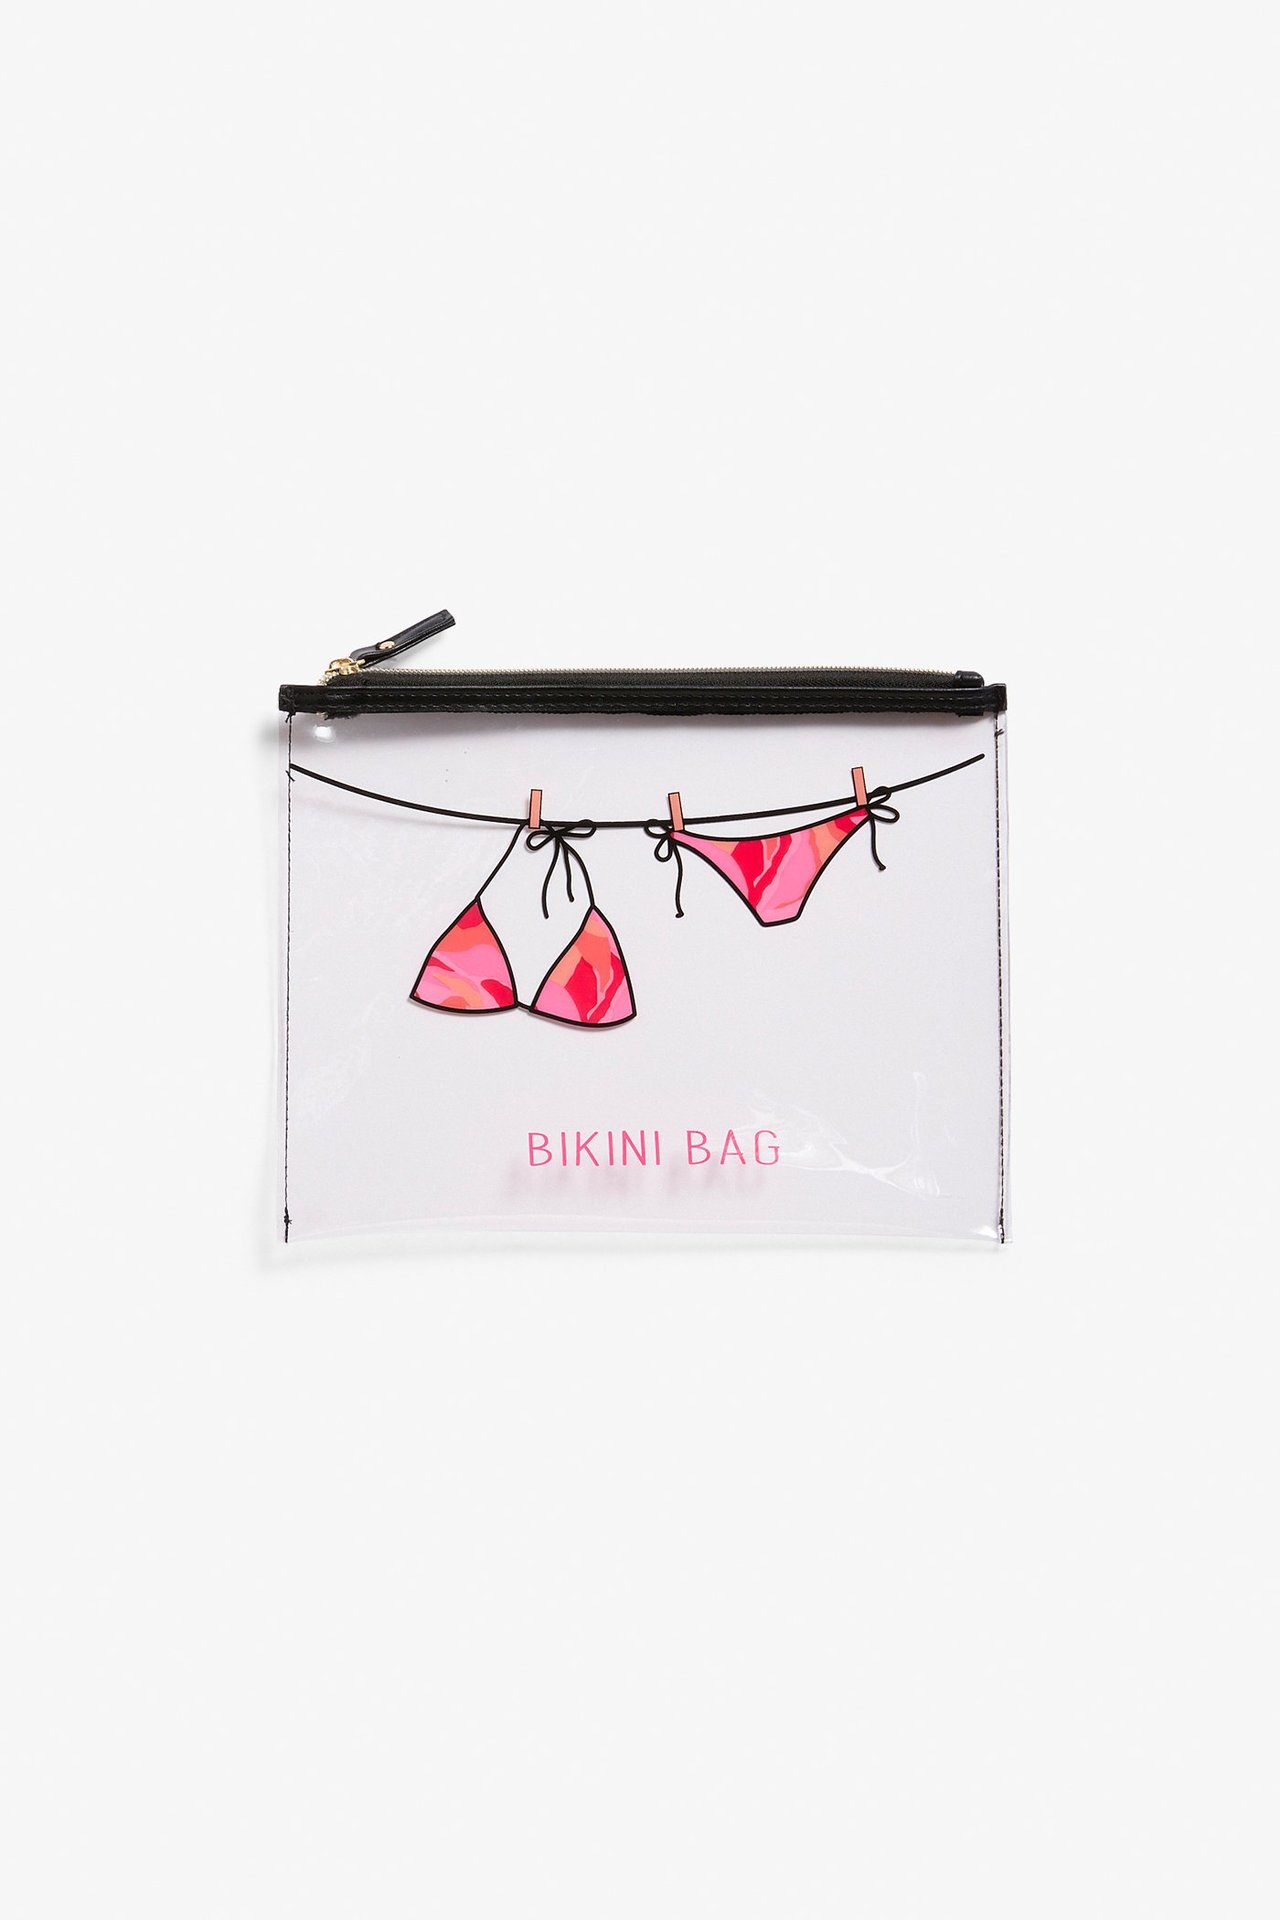 Bikini bag